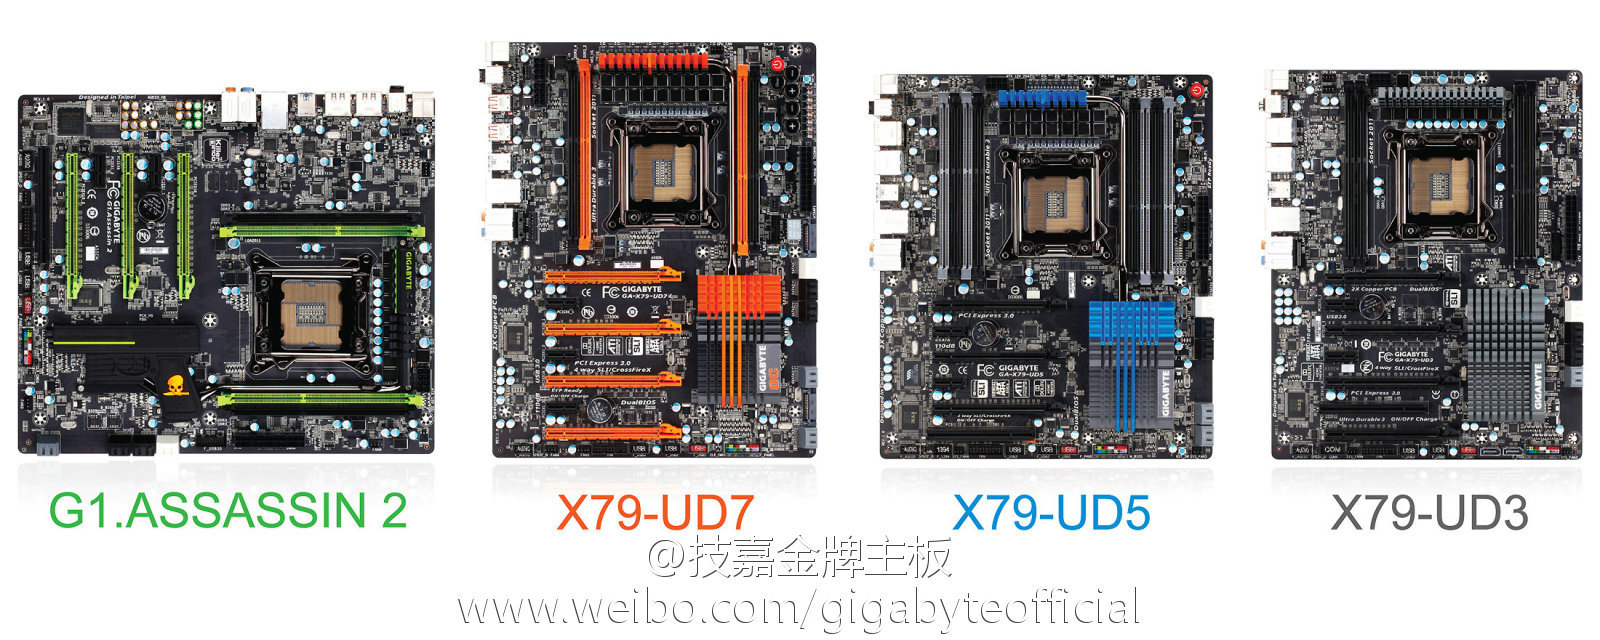 Vier X79-Platinen von Gigabyte